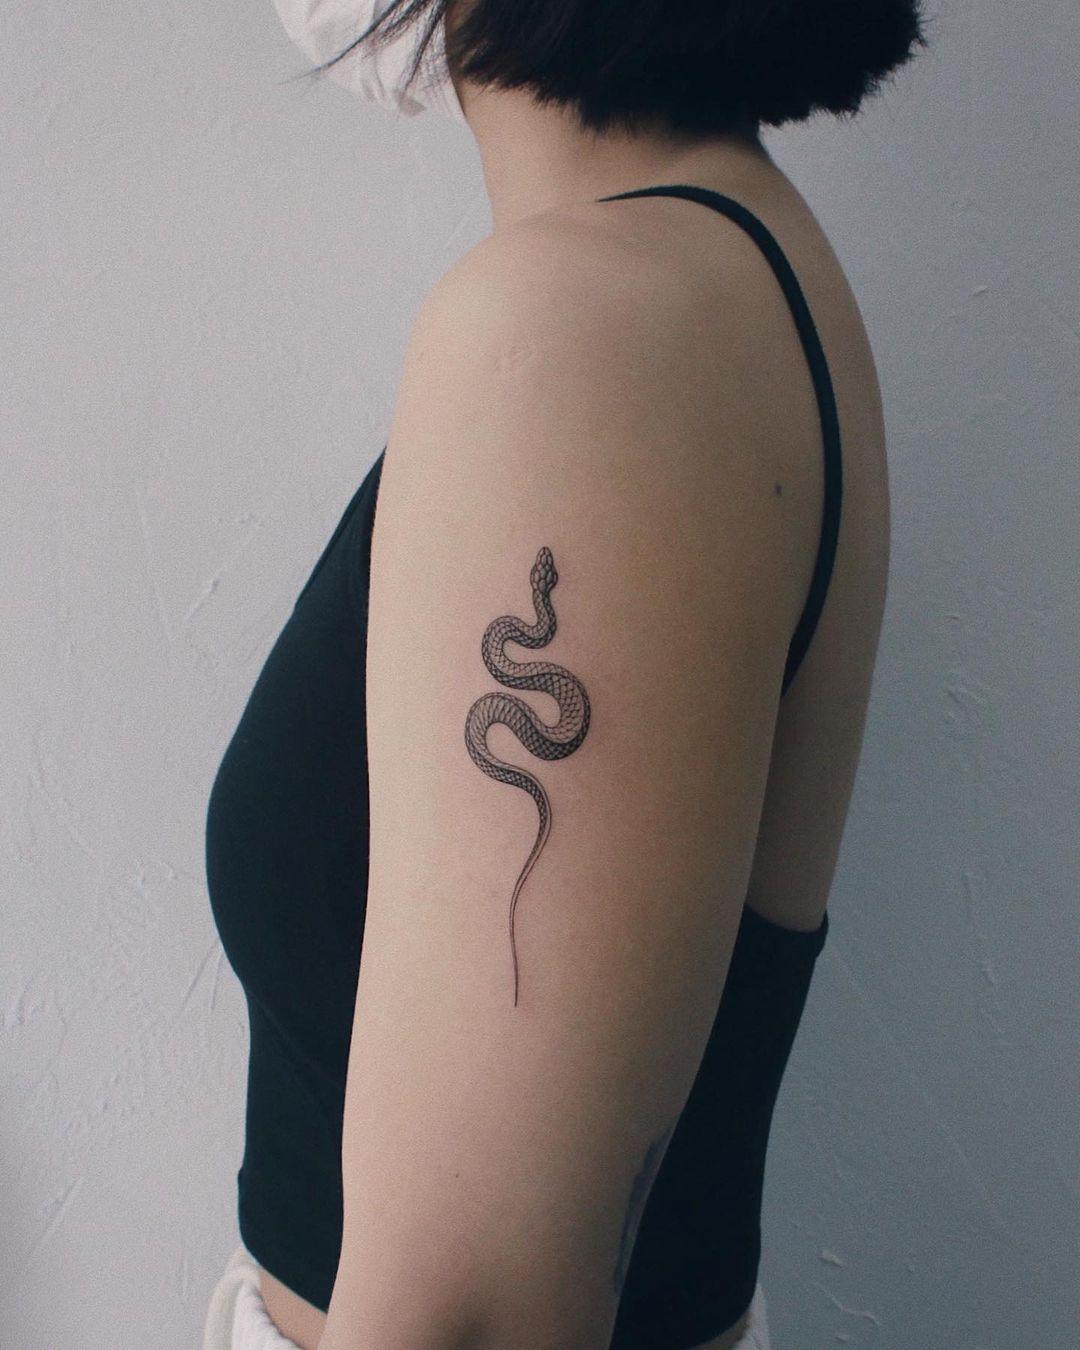 Tatuagem De Cobra Confira Os Significados Dessa Tattoo Fotos